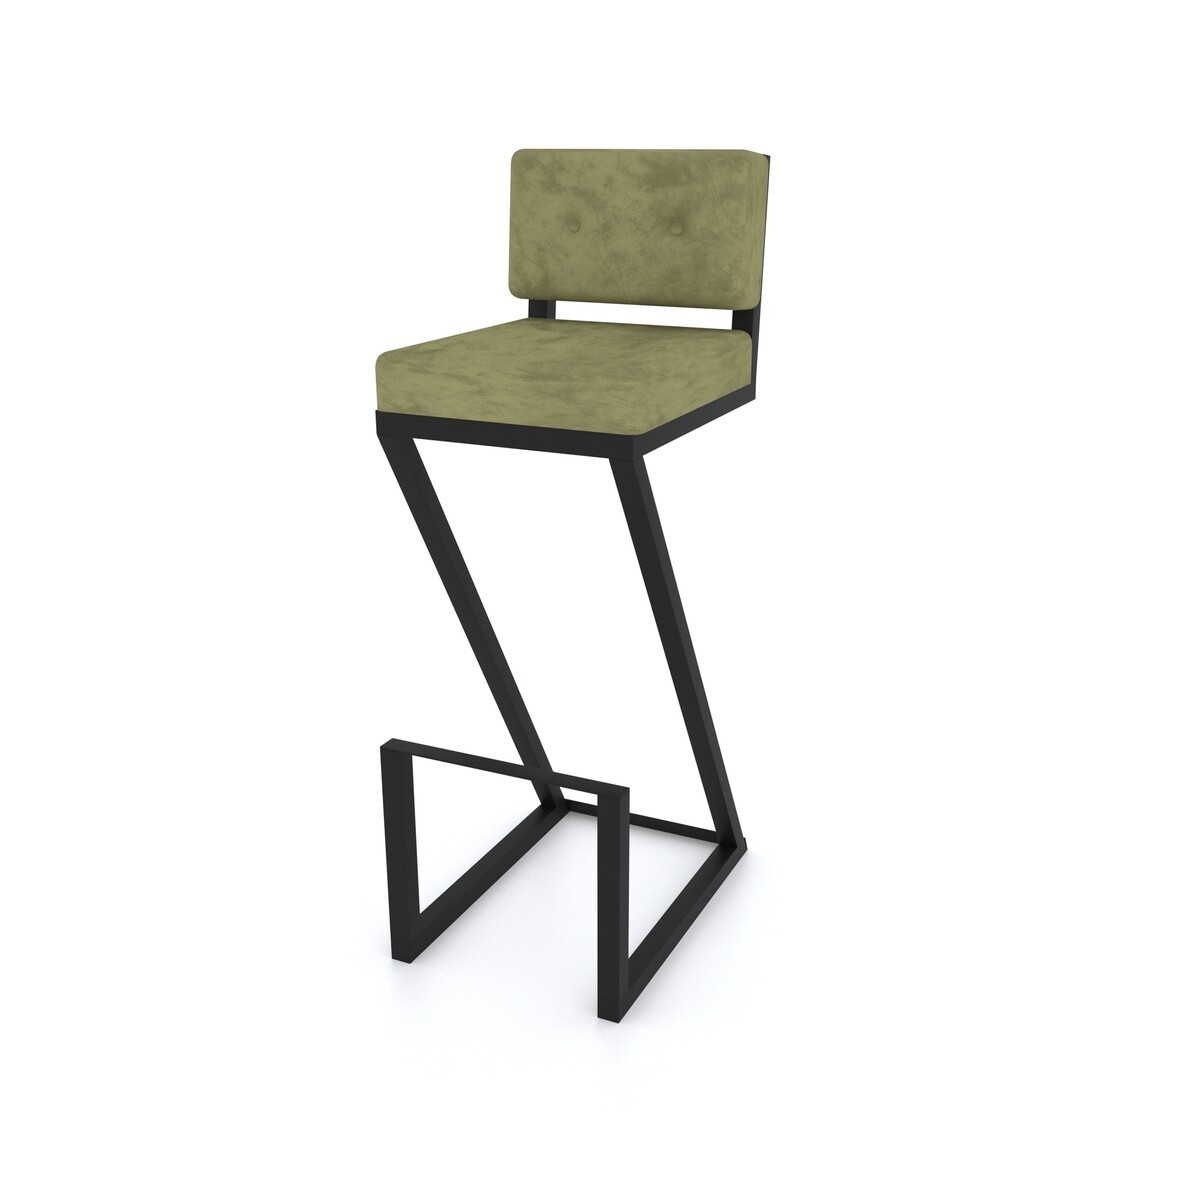 zielone krzesło barowe z oparciem na wymiar, możliwe zmiany kolorystyczne oraz zmiany w wymiarach za dopłatą - wykonujemy projekty indywidualne 